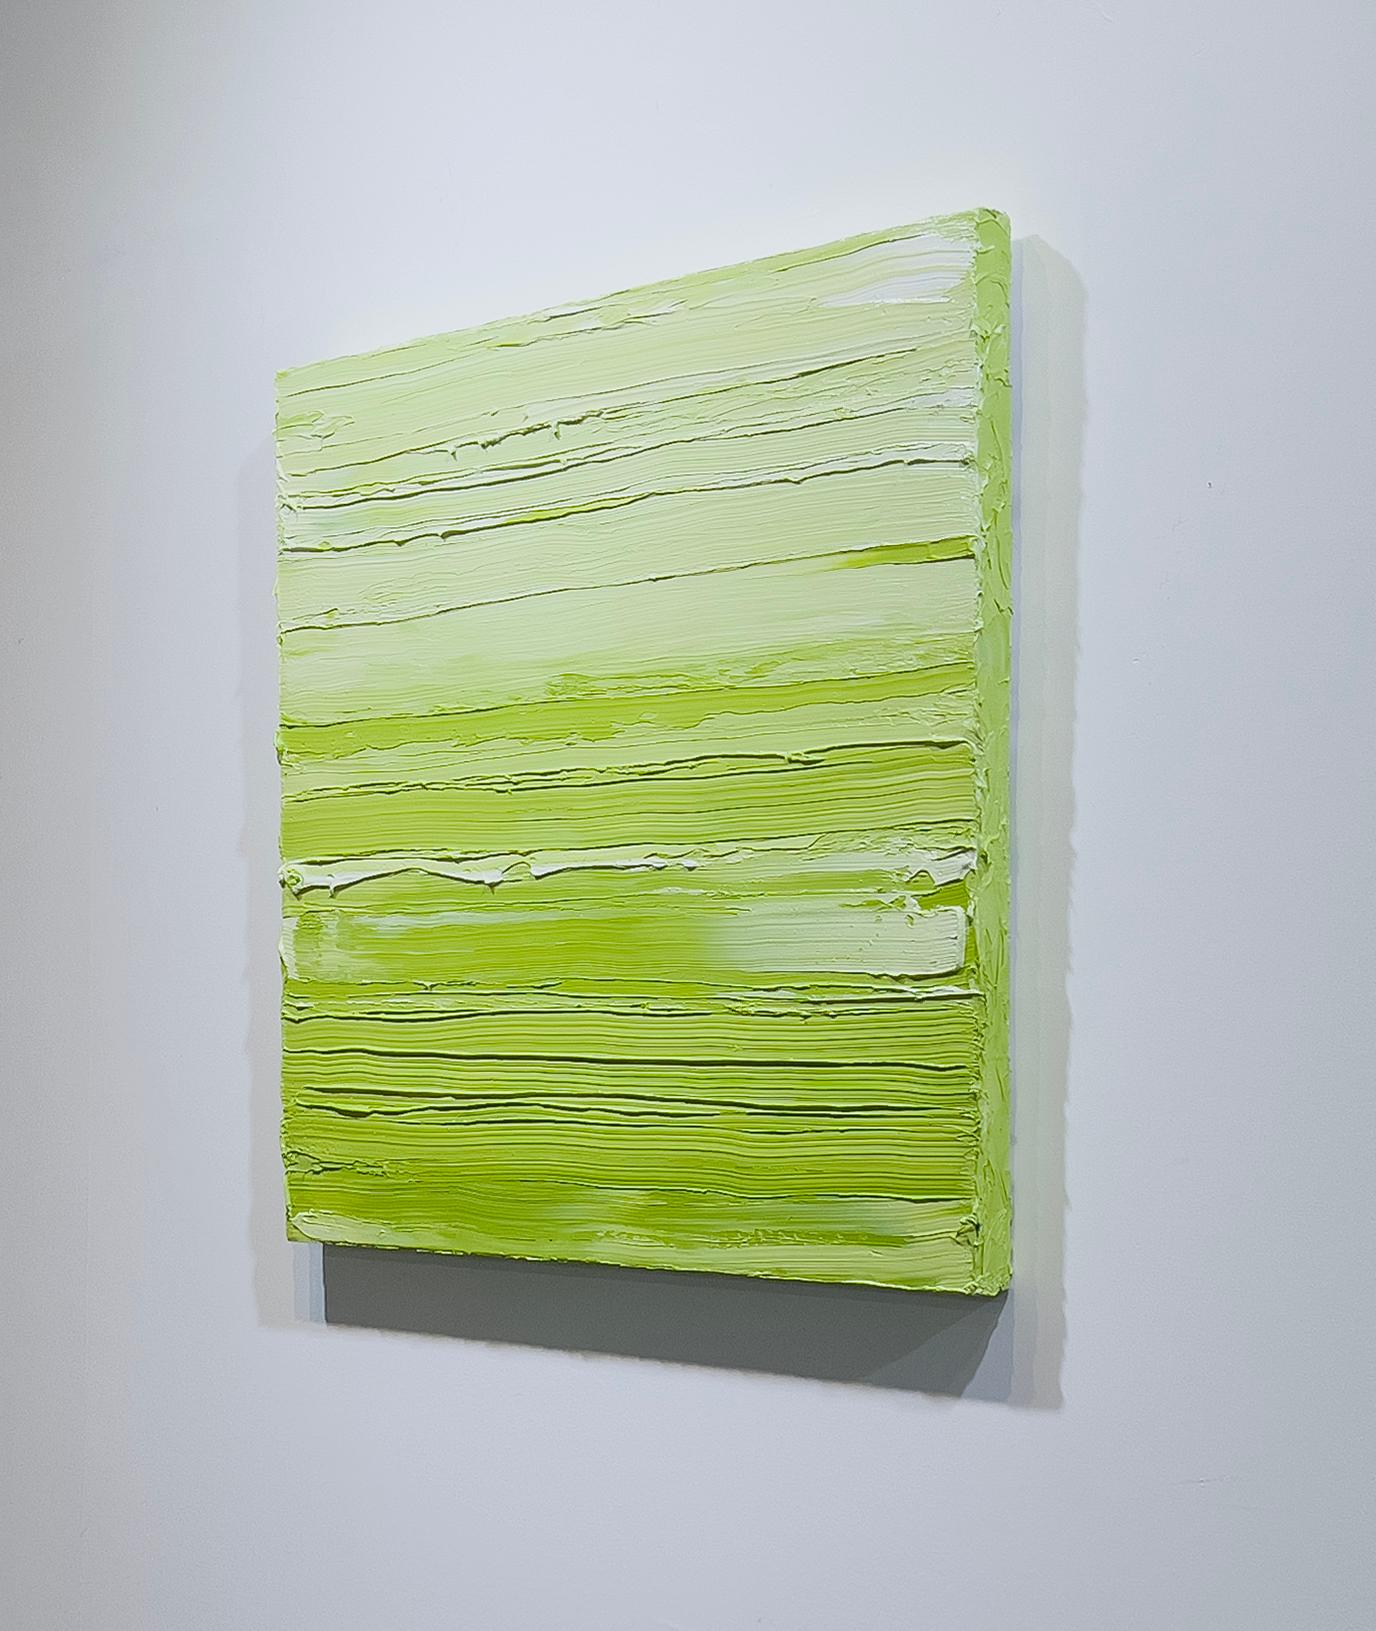 Cette peinture abstraite contemporaine de Teodora Guererra présente une palette de vert vif. L'artiste applique d'épaisses couches de peinture verte sur le tableau par des gestes horizontaux, donnant à la surface de la toile une texture aux teintes